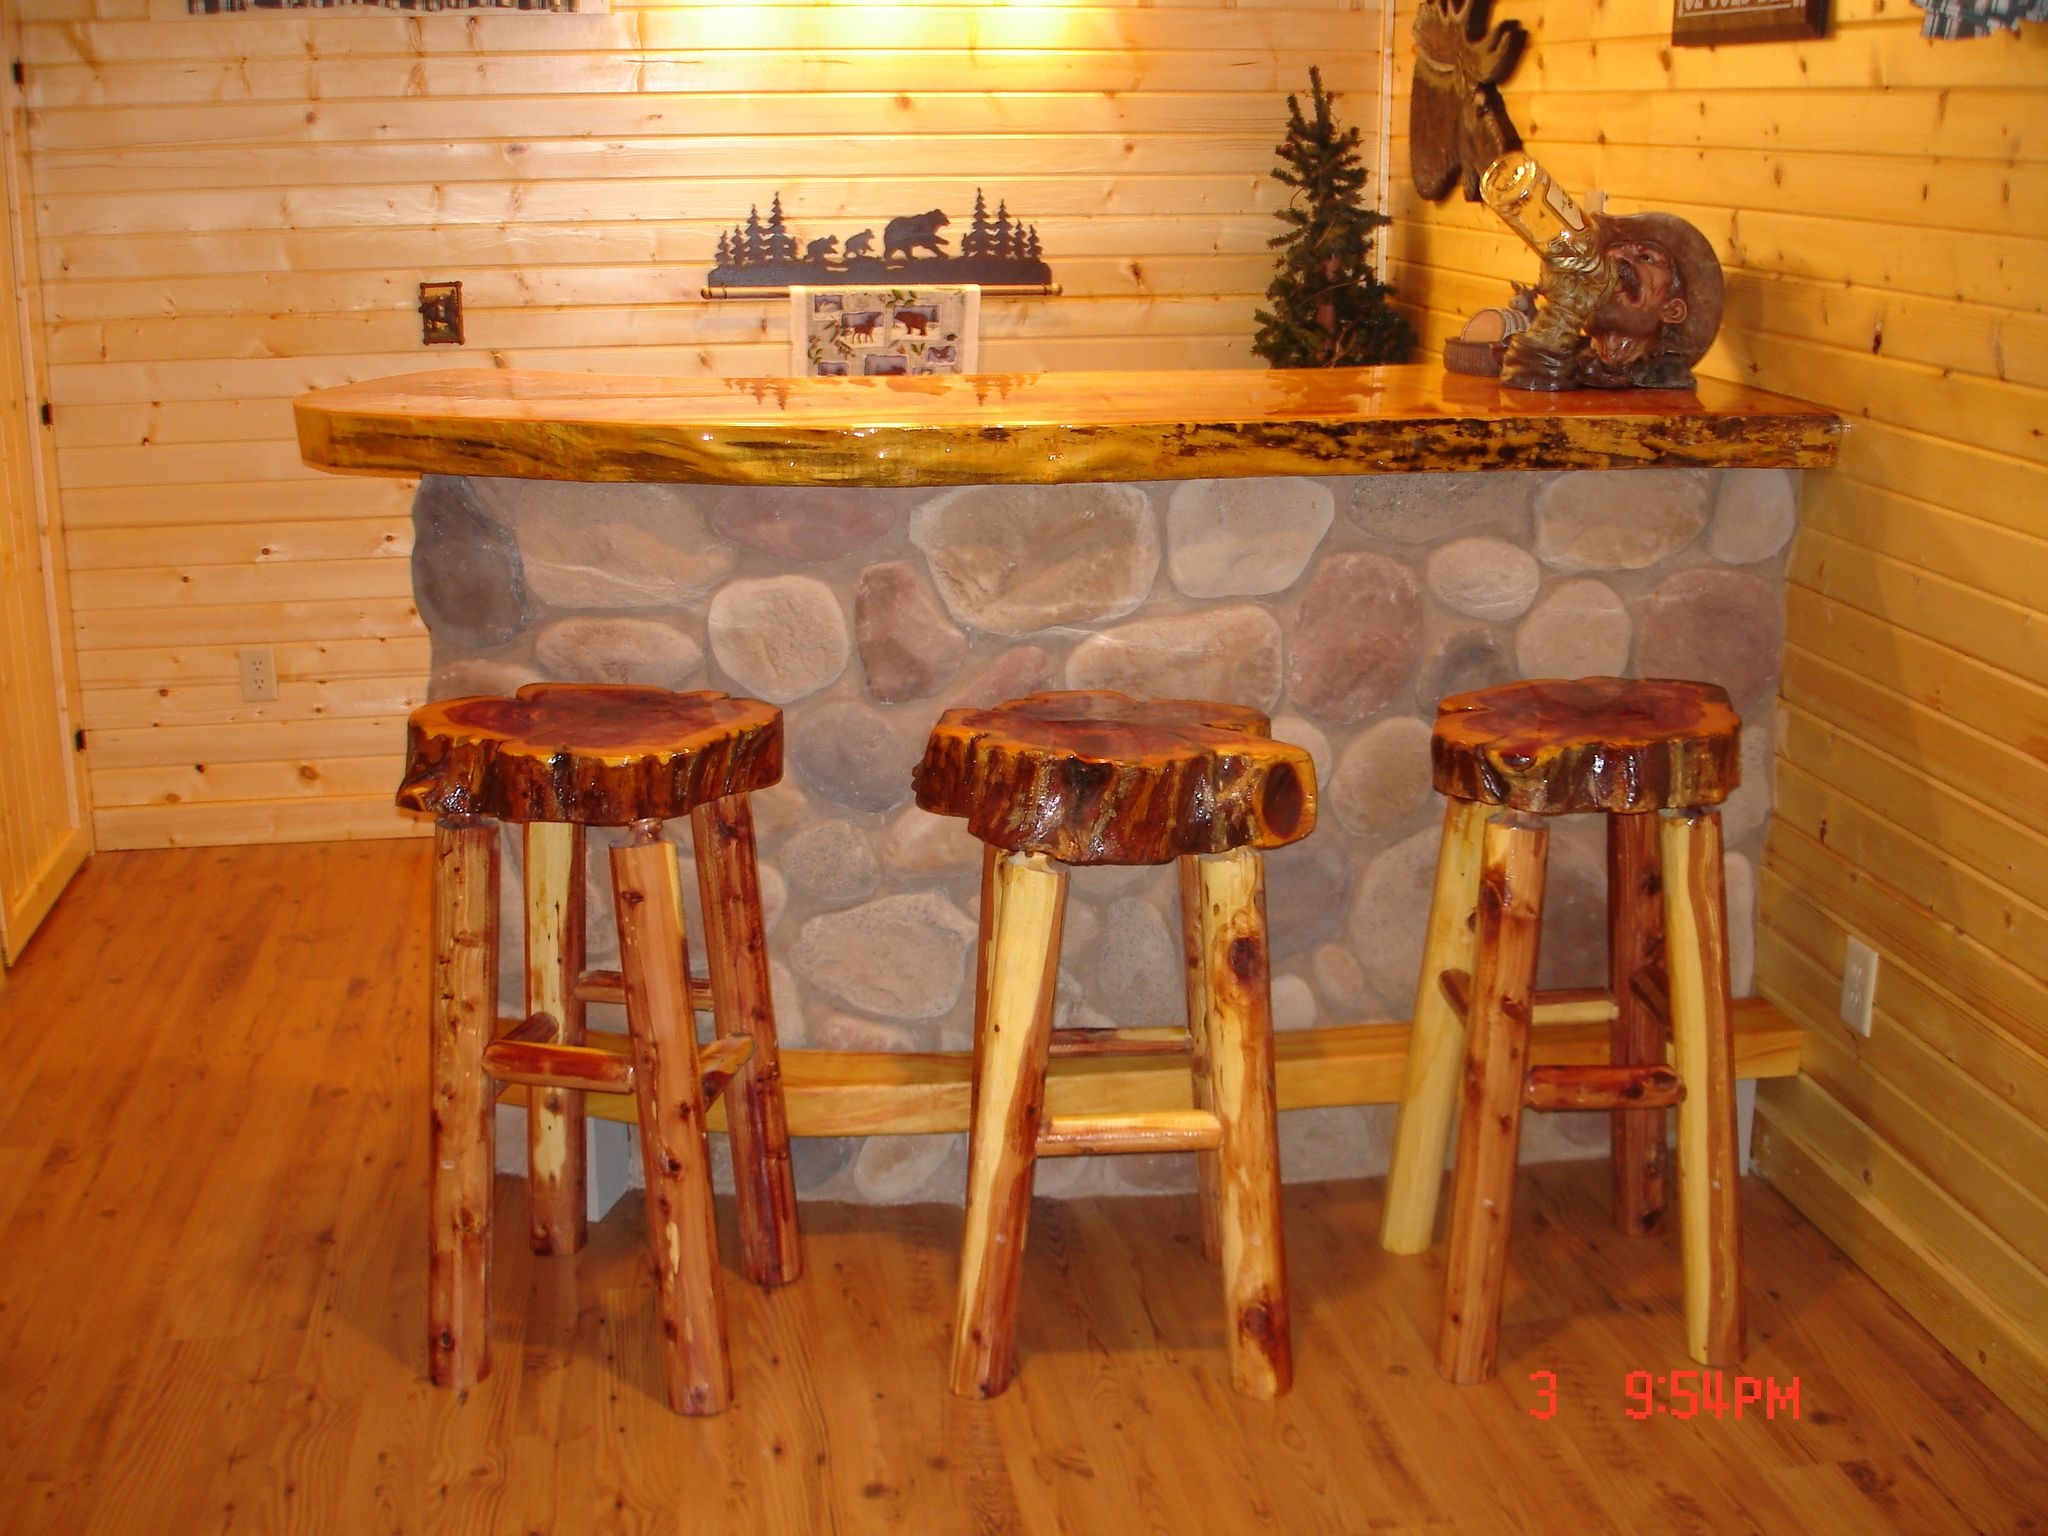 Rustic bar stool